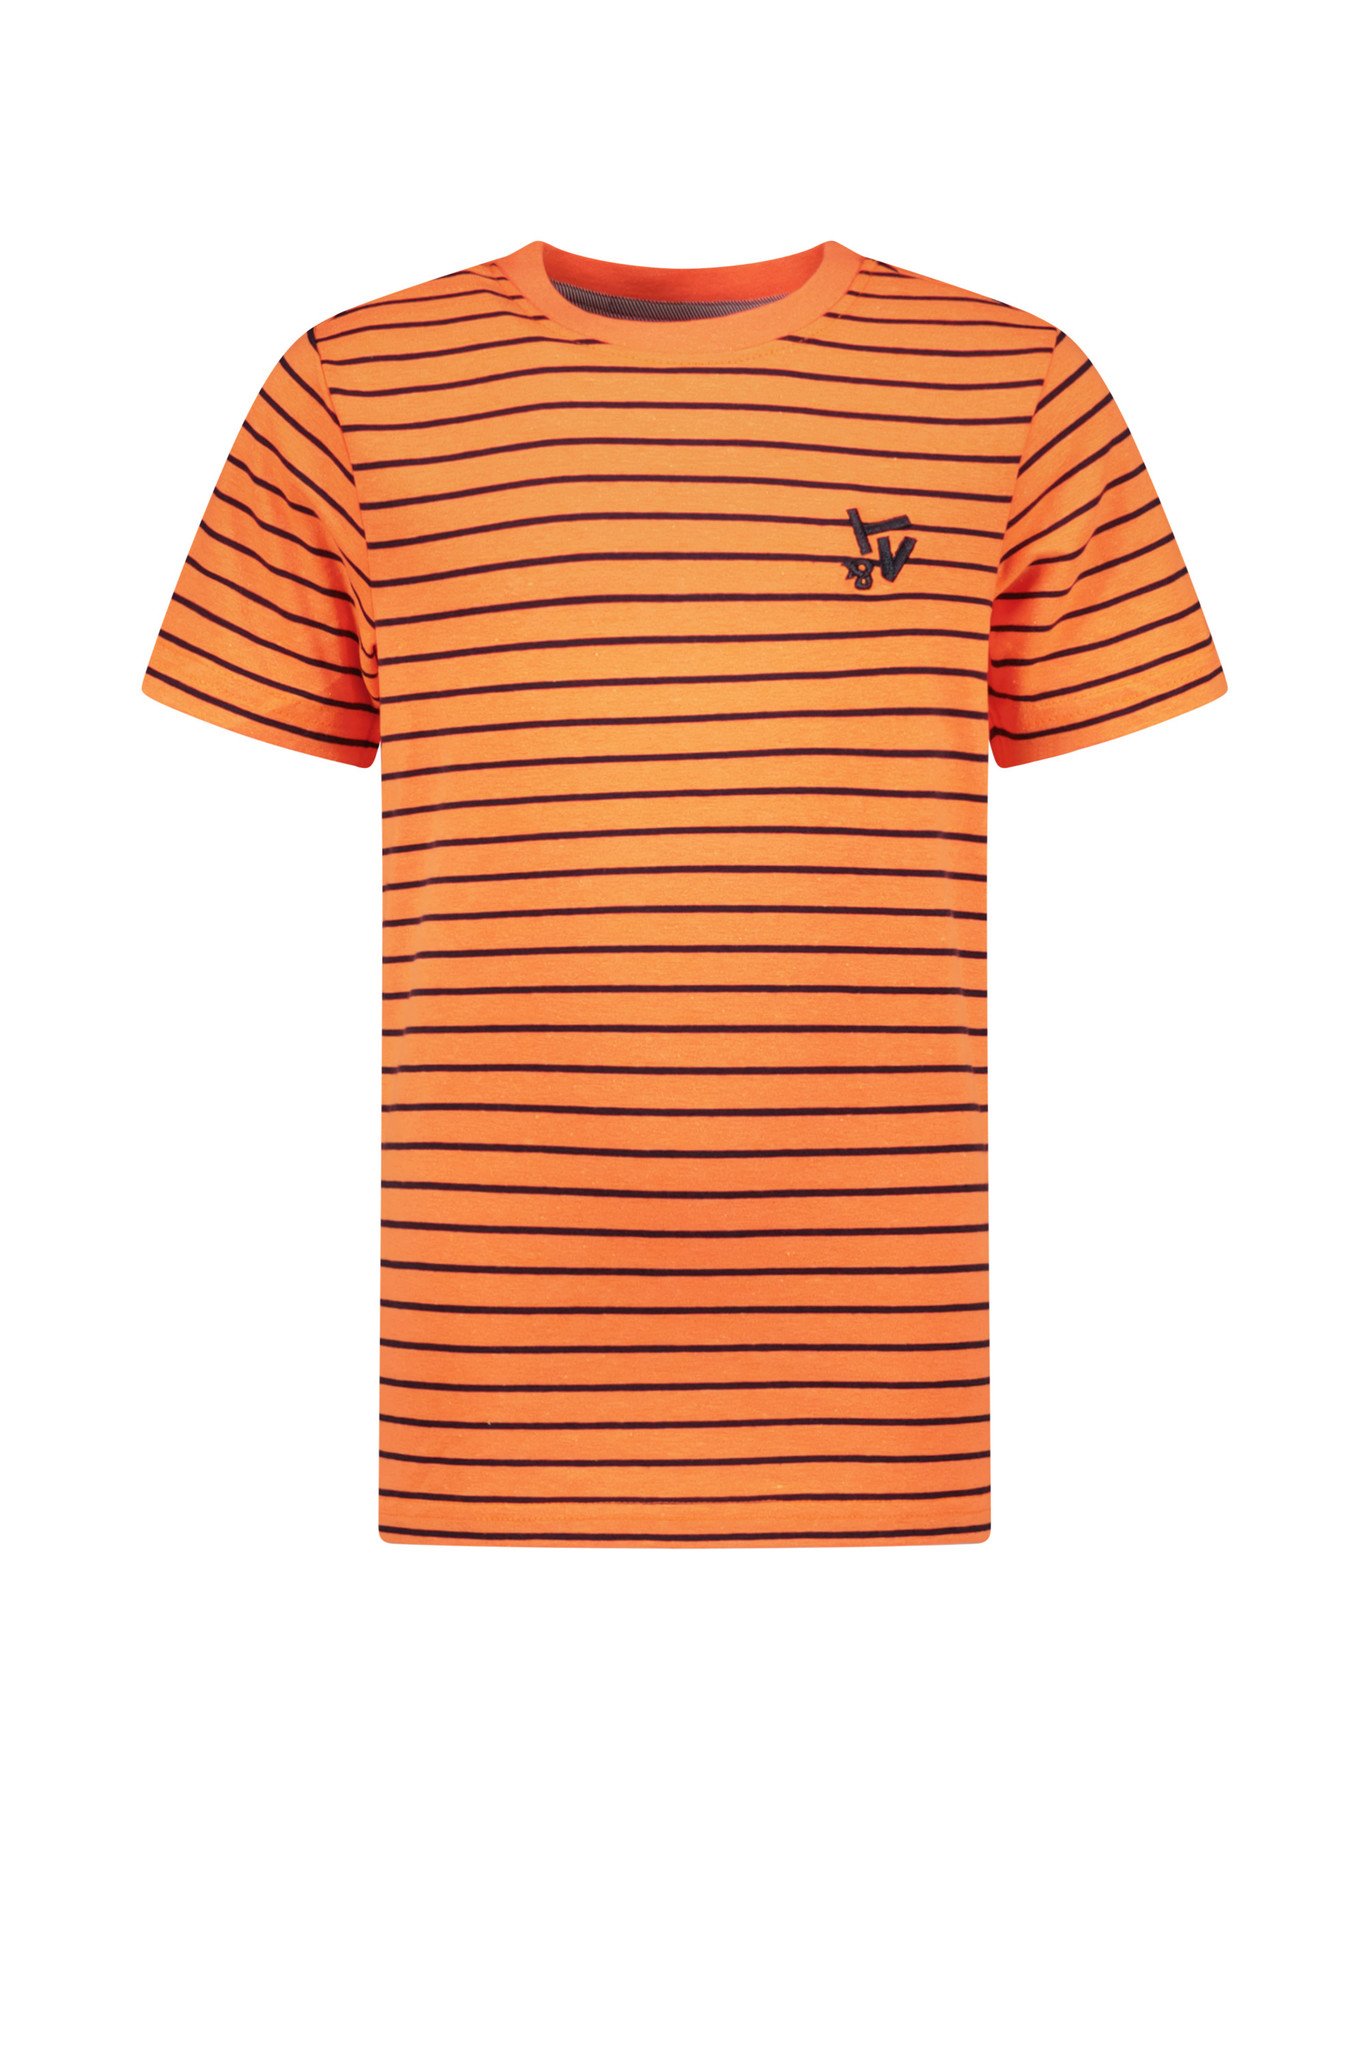 TYGO & vito jongens gestreept t-shirt Neon Orange Clownfish